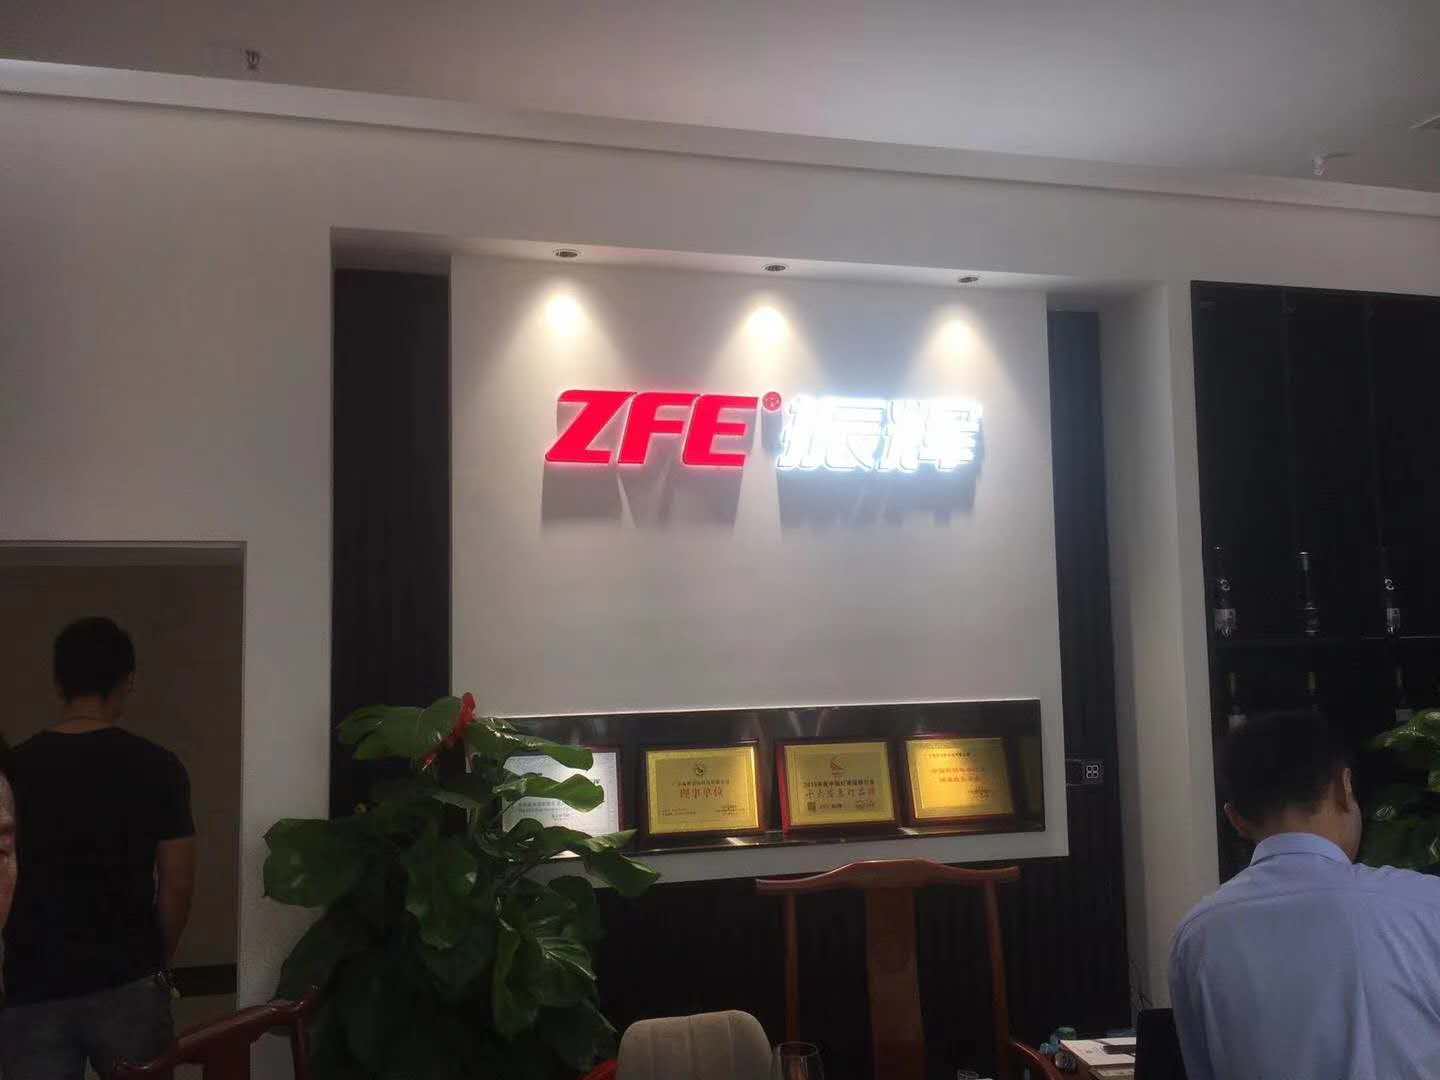 شركة ZFE - متجر Guzhen في 9 أكتوبر ، التشغيل التجريبي ، مرحبًا بكم في زيارة مفاوضات العمل